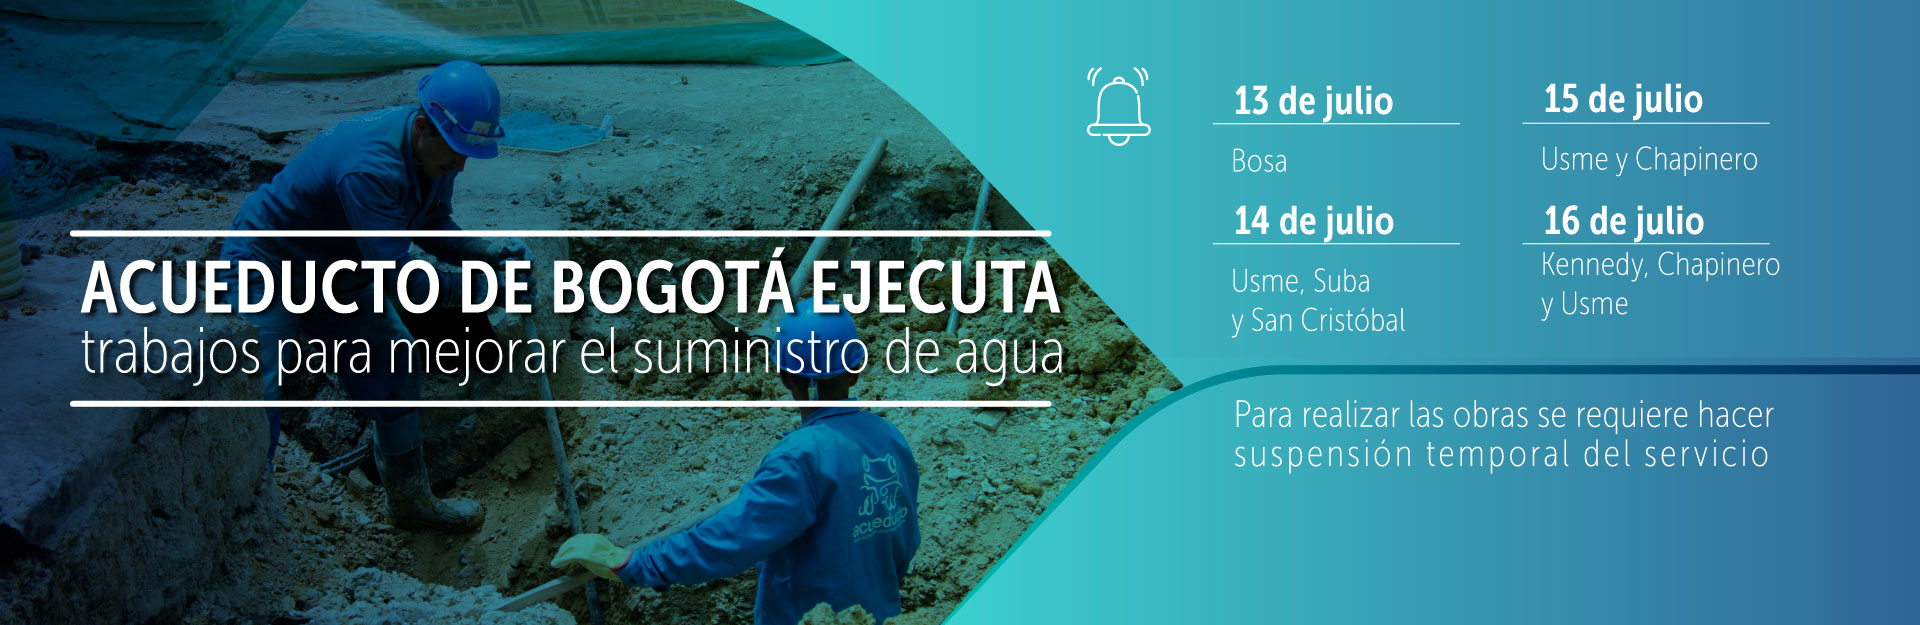 Acueducto de Bogotá ejecuta trabajos para mejorar el suministro de agua